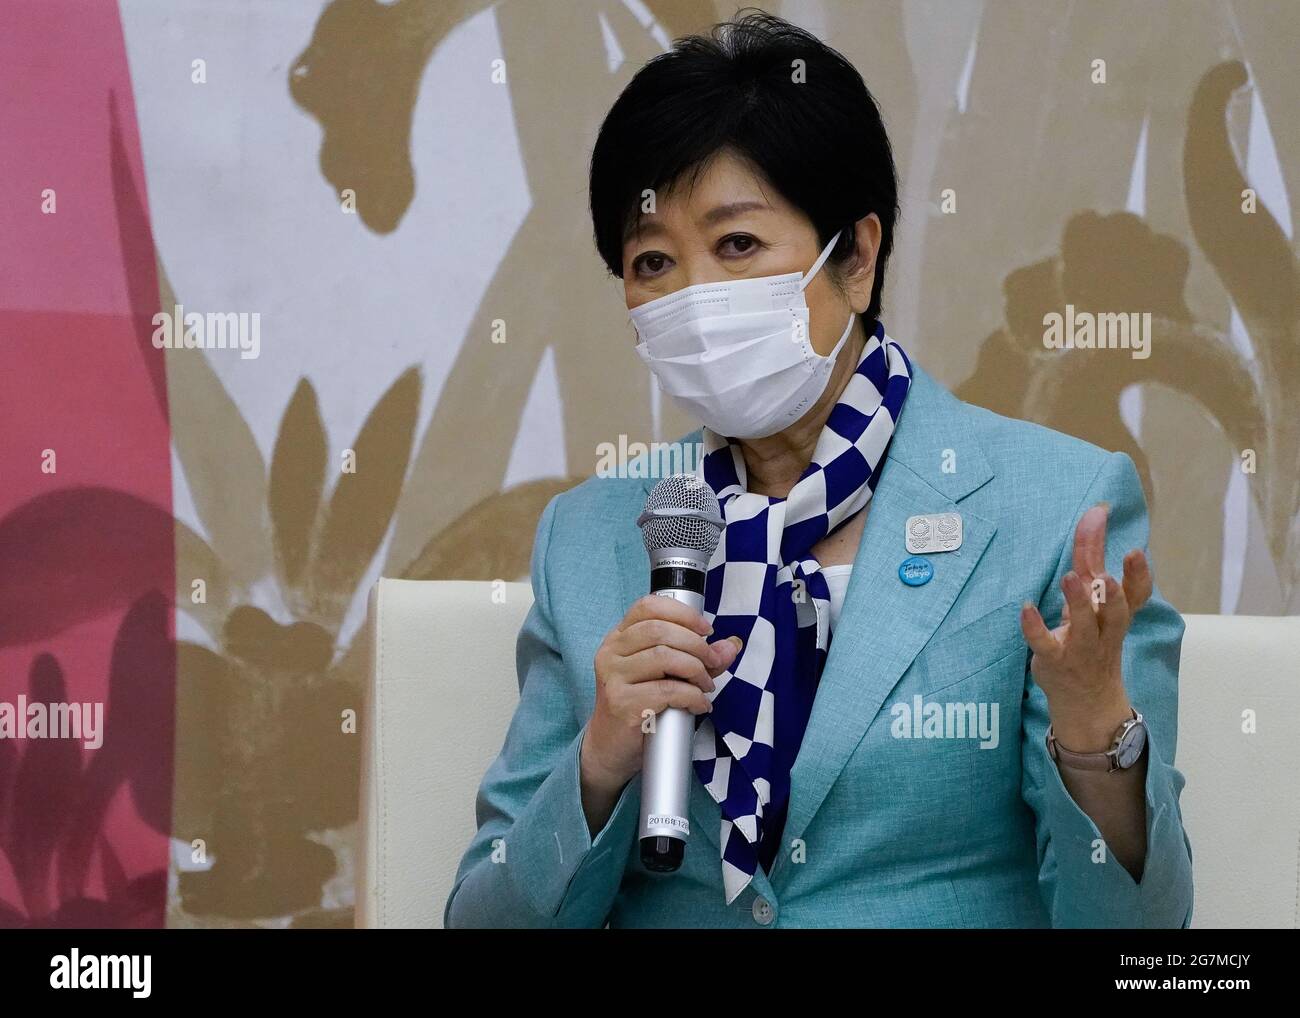 Tokio, Japan. Juli 2021. Die Gouverneurin von Tokio, Koike Yuriko, spricht während eines Treffens mit dem IOC-Präsidenten Thomas Bach am 15. Juli 2021 in Tokio, Japan. Quelle: POOL/ZUMA Wire/Alamy Live News Stockfoto